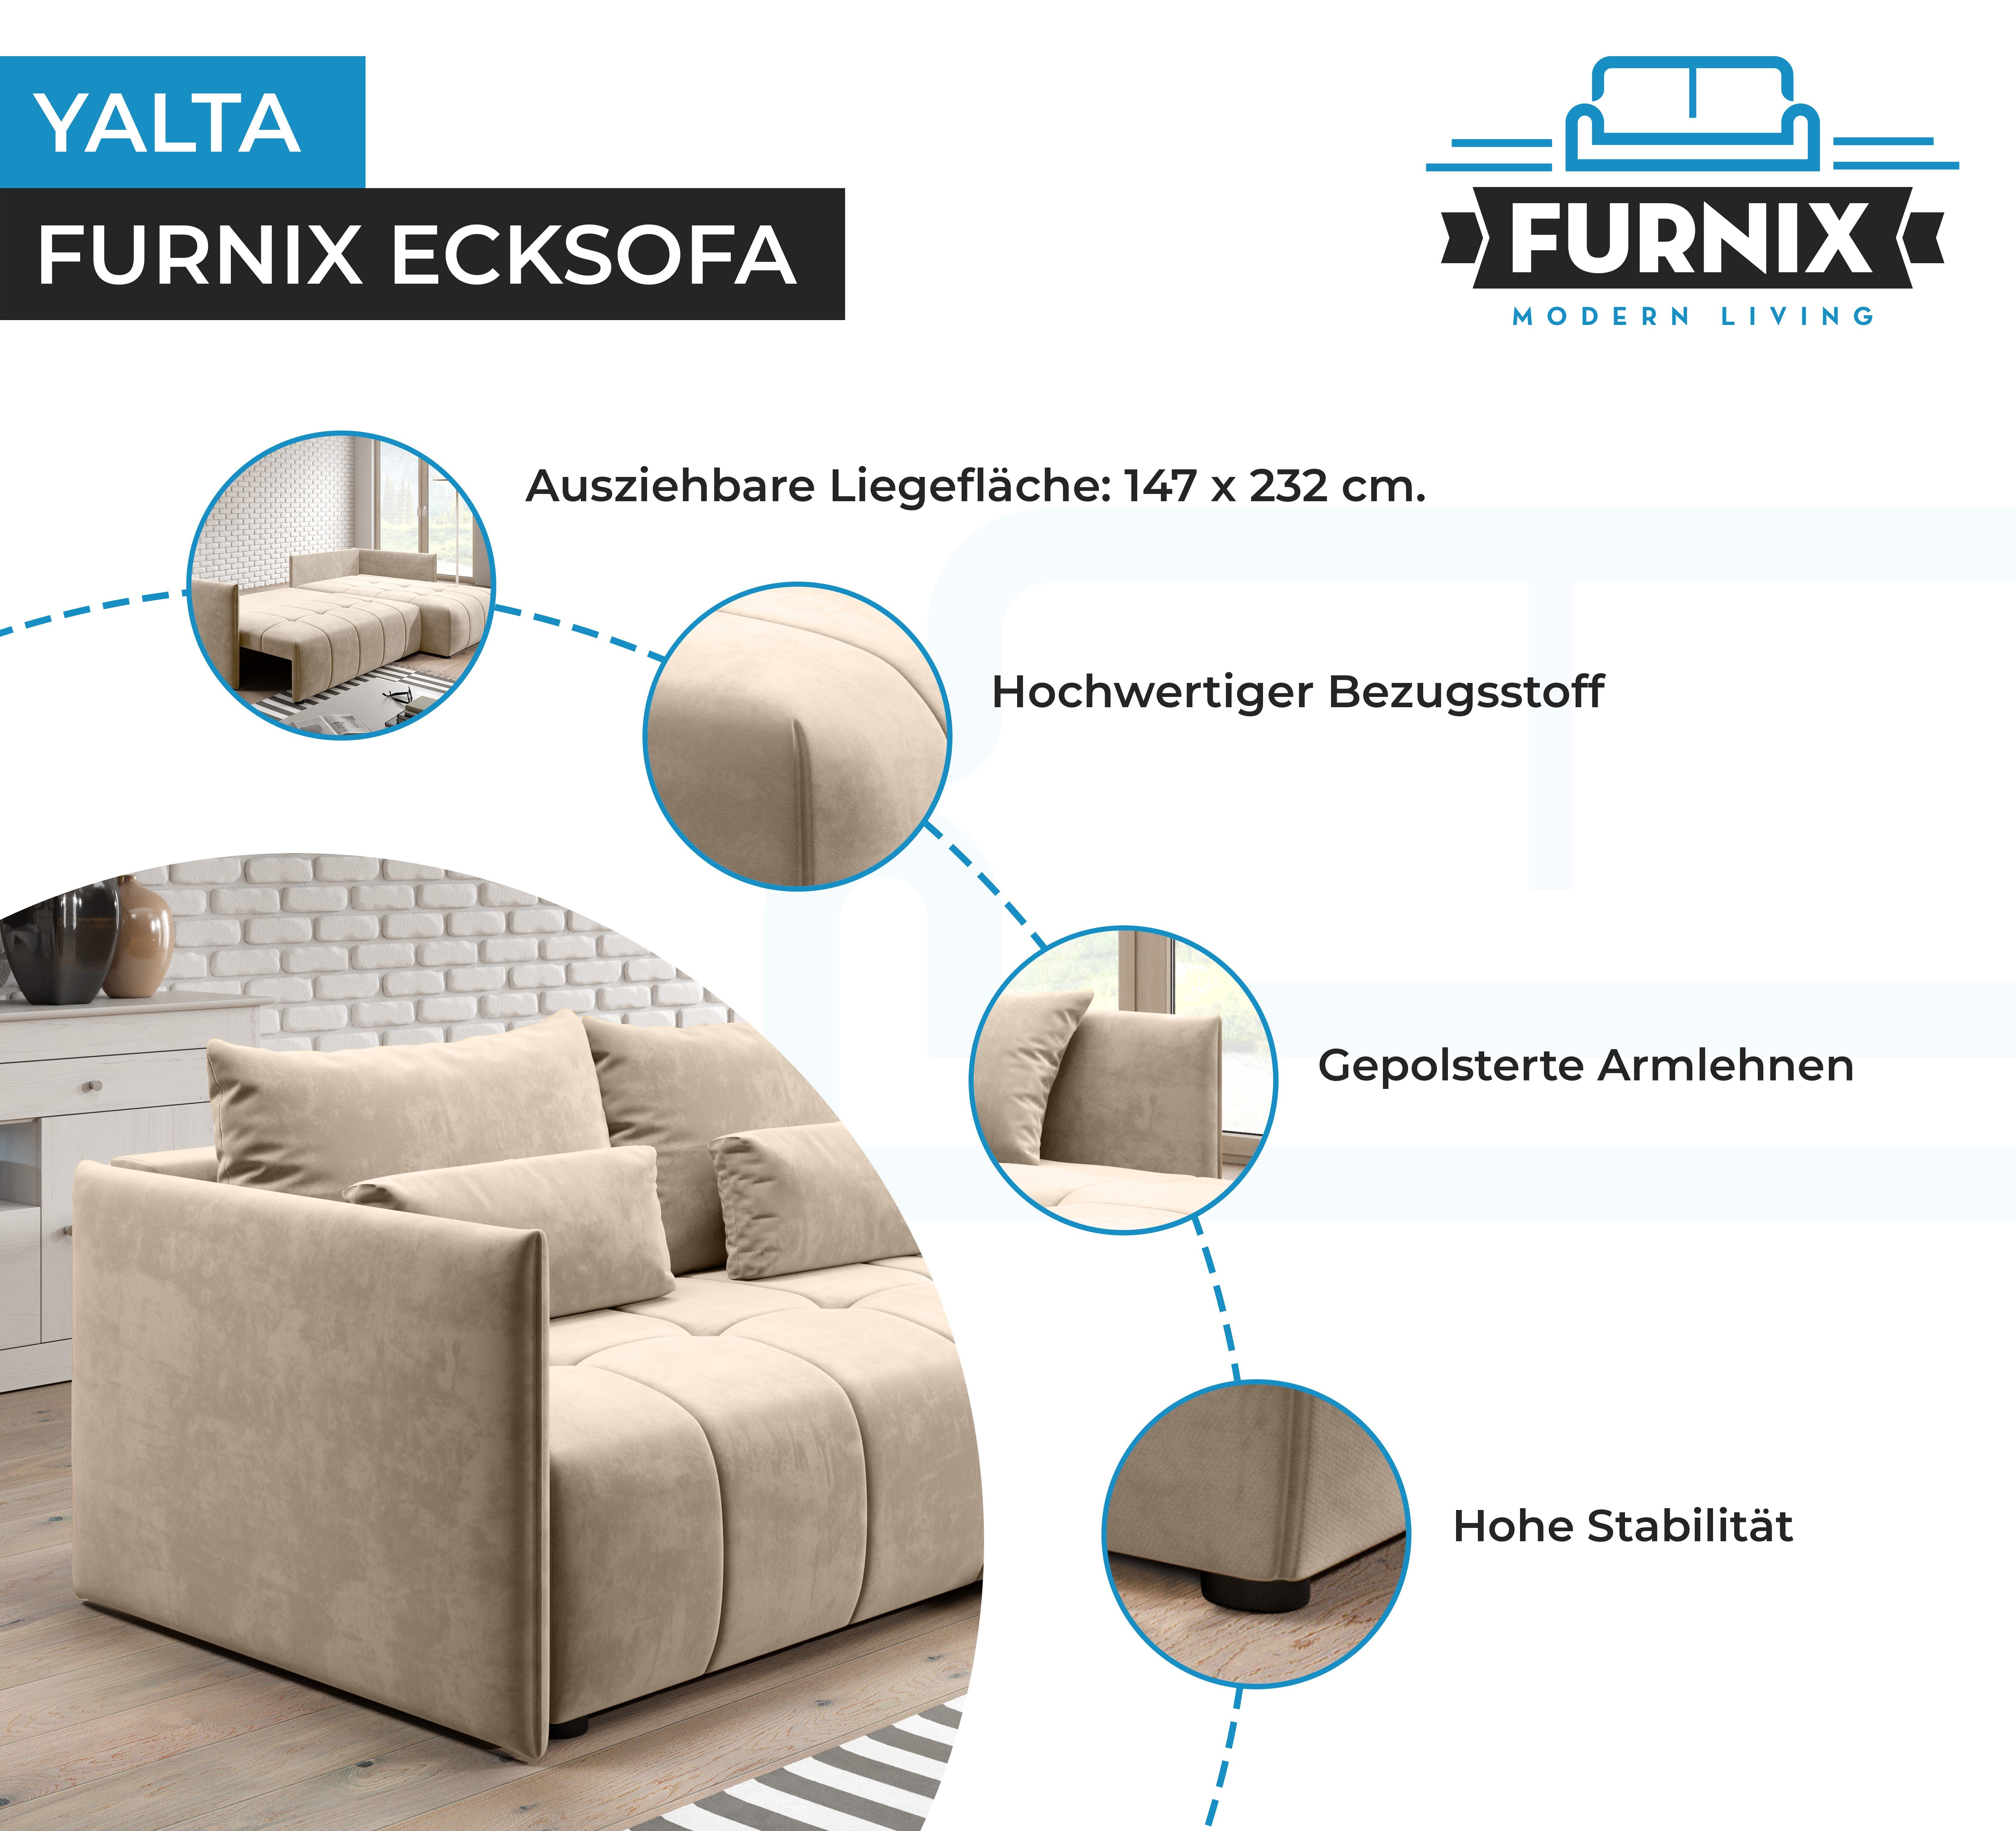 Europe Beige ausziehbar Bettkasten in Schlafsofa 02 MH YALTA Couch Furnix Ecksofa mit Kissen, Made und